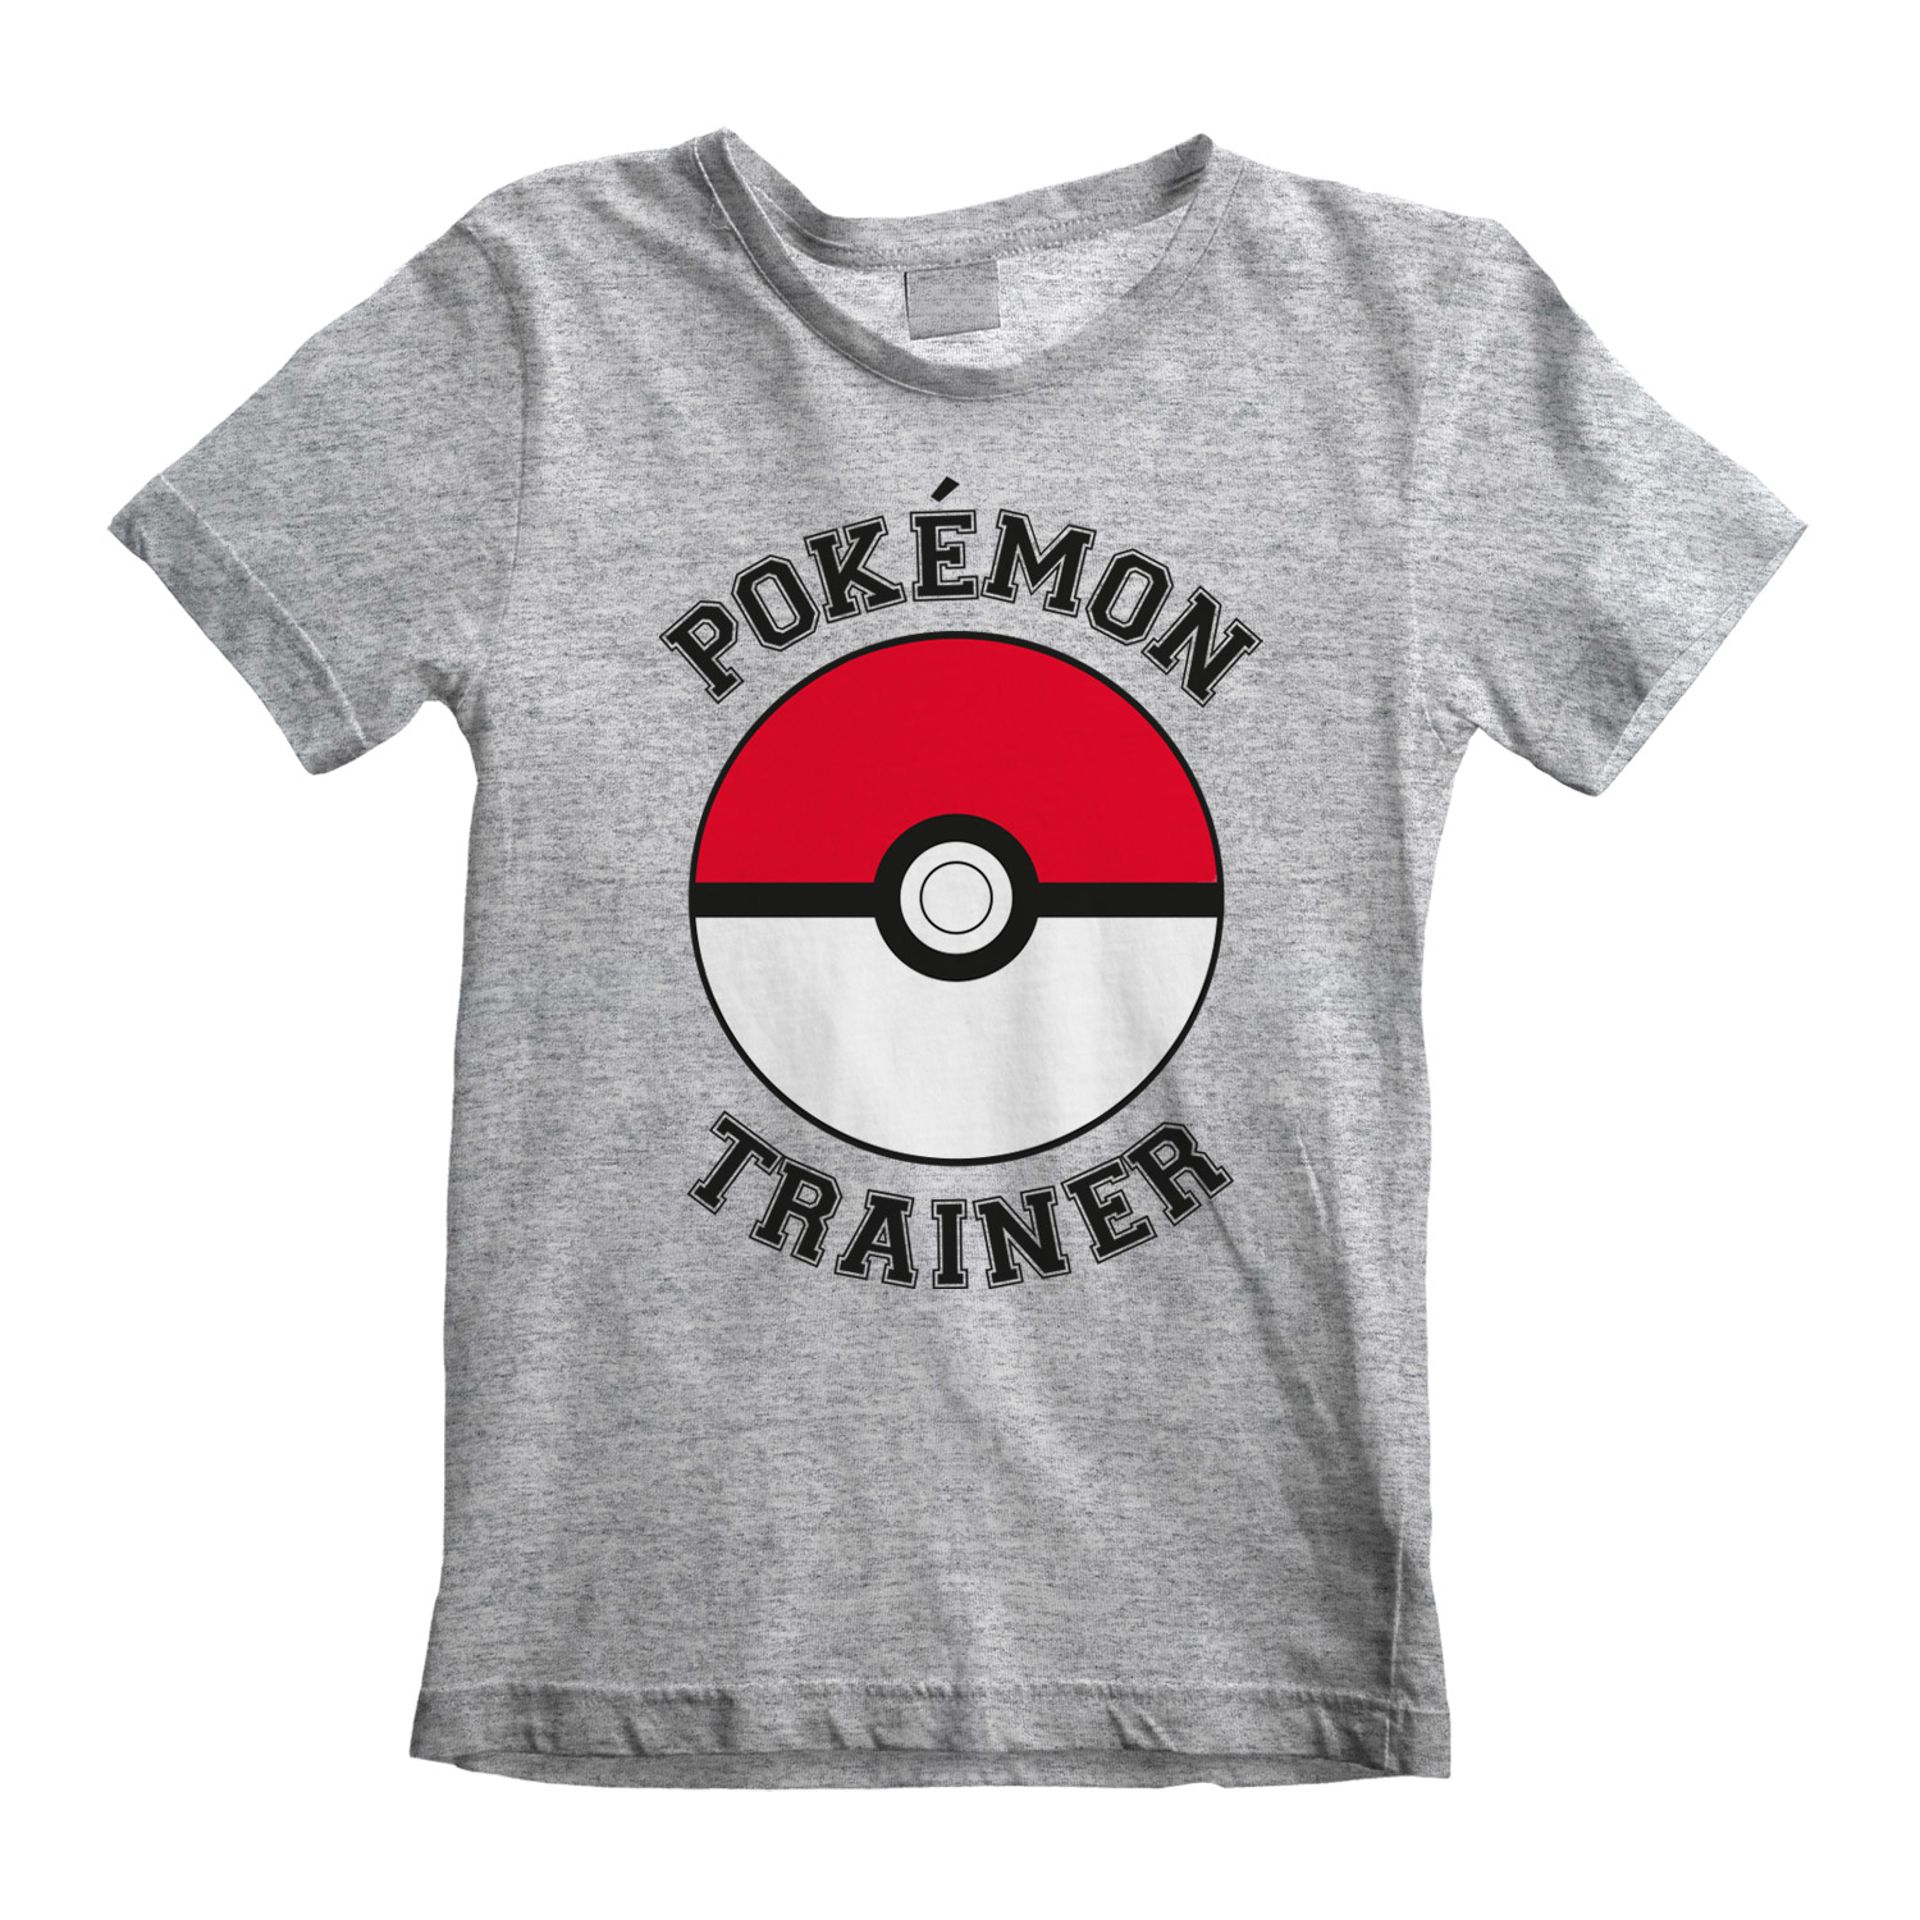 Nintendo - T-shirt Enfant Gris chiné Pokémon Entraîneur - 5-6 an